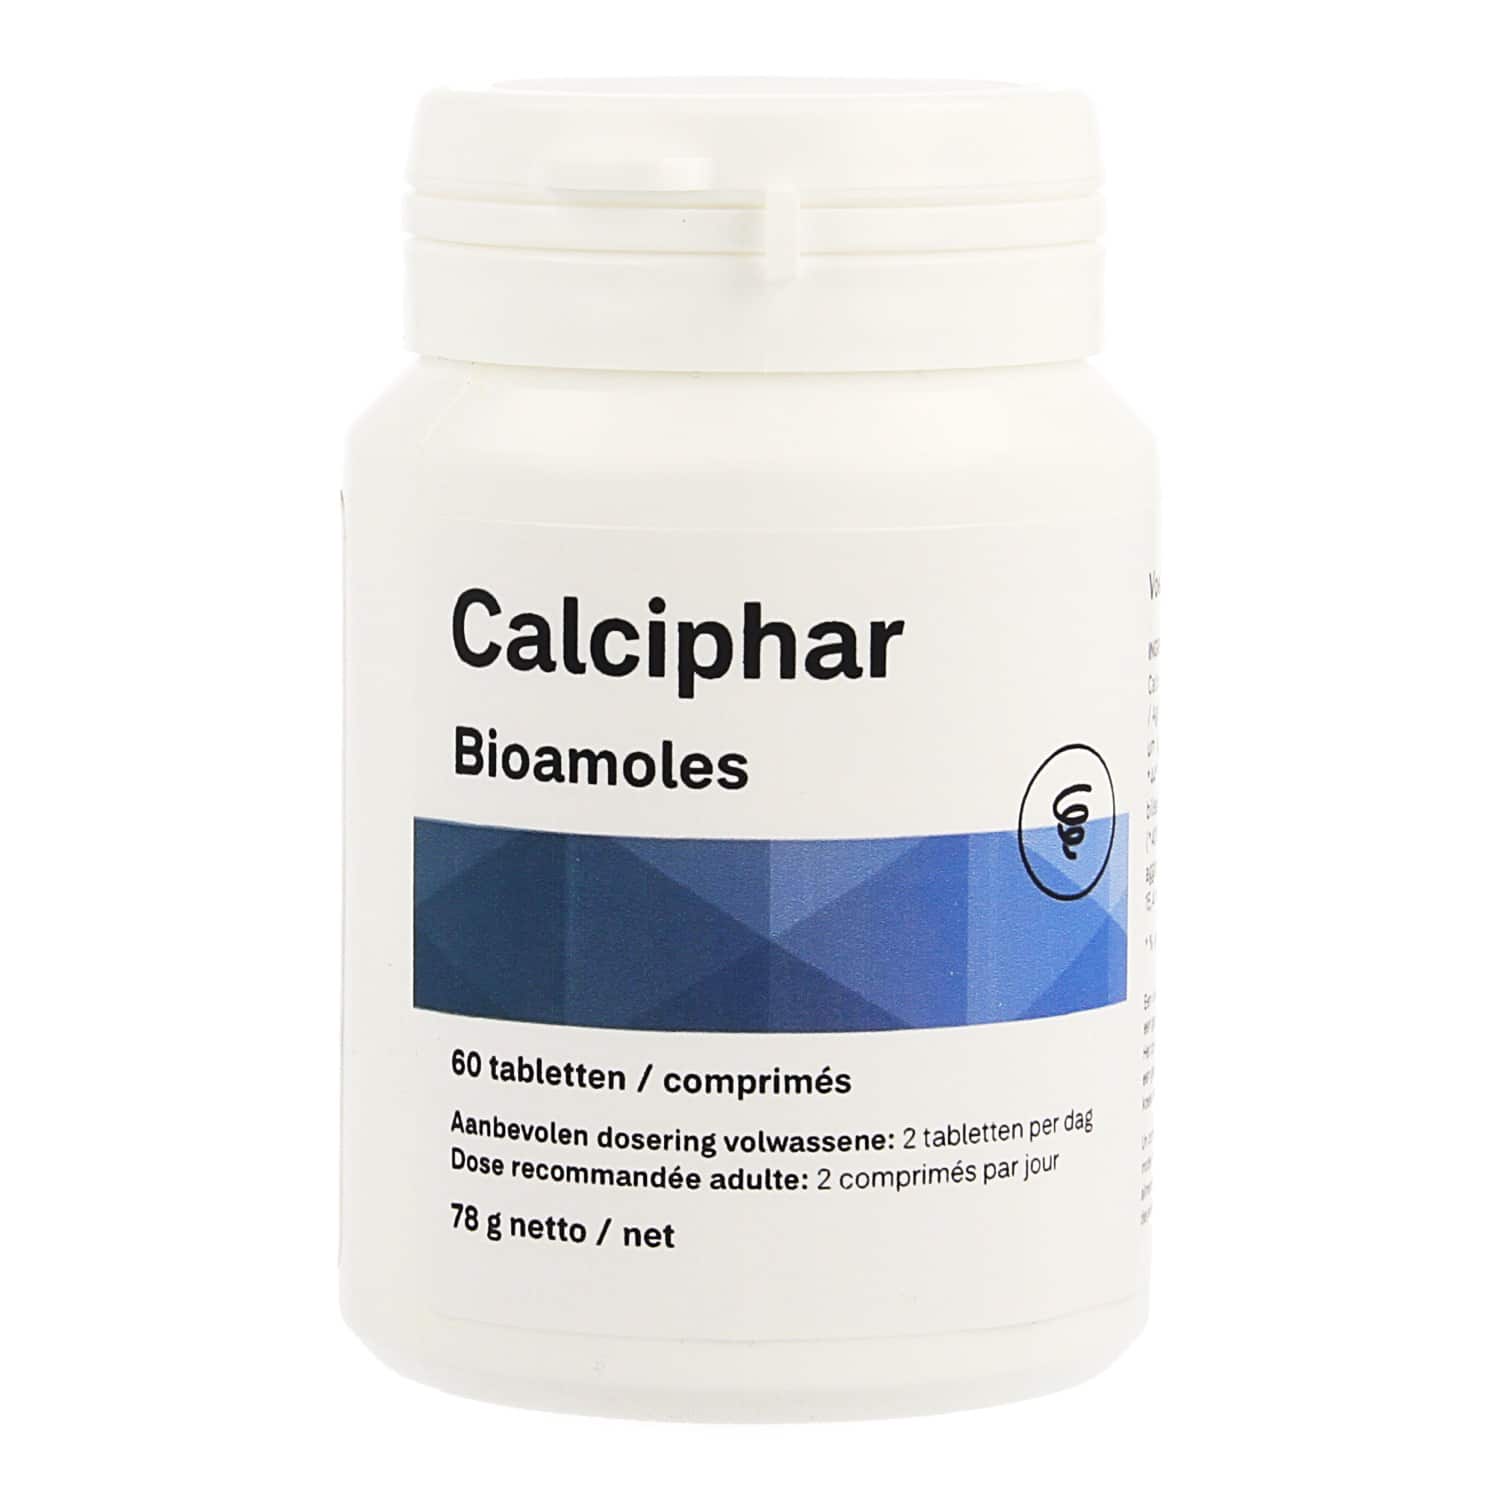 Bioamoles Calciphar